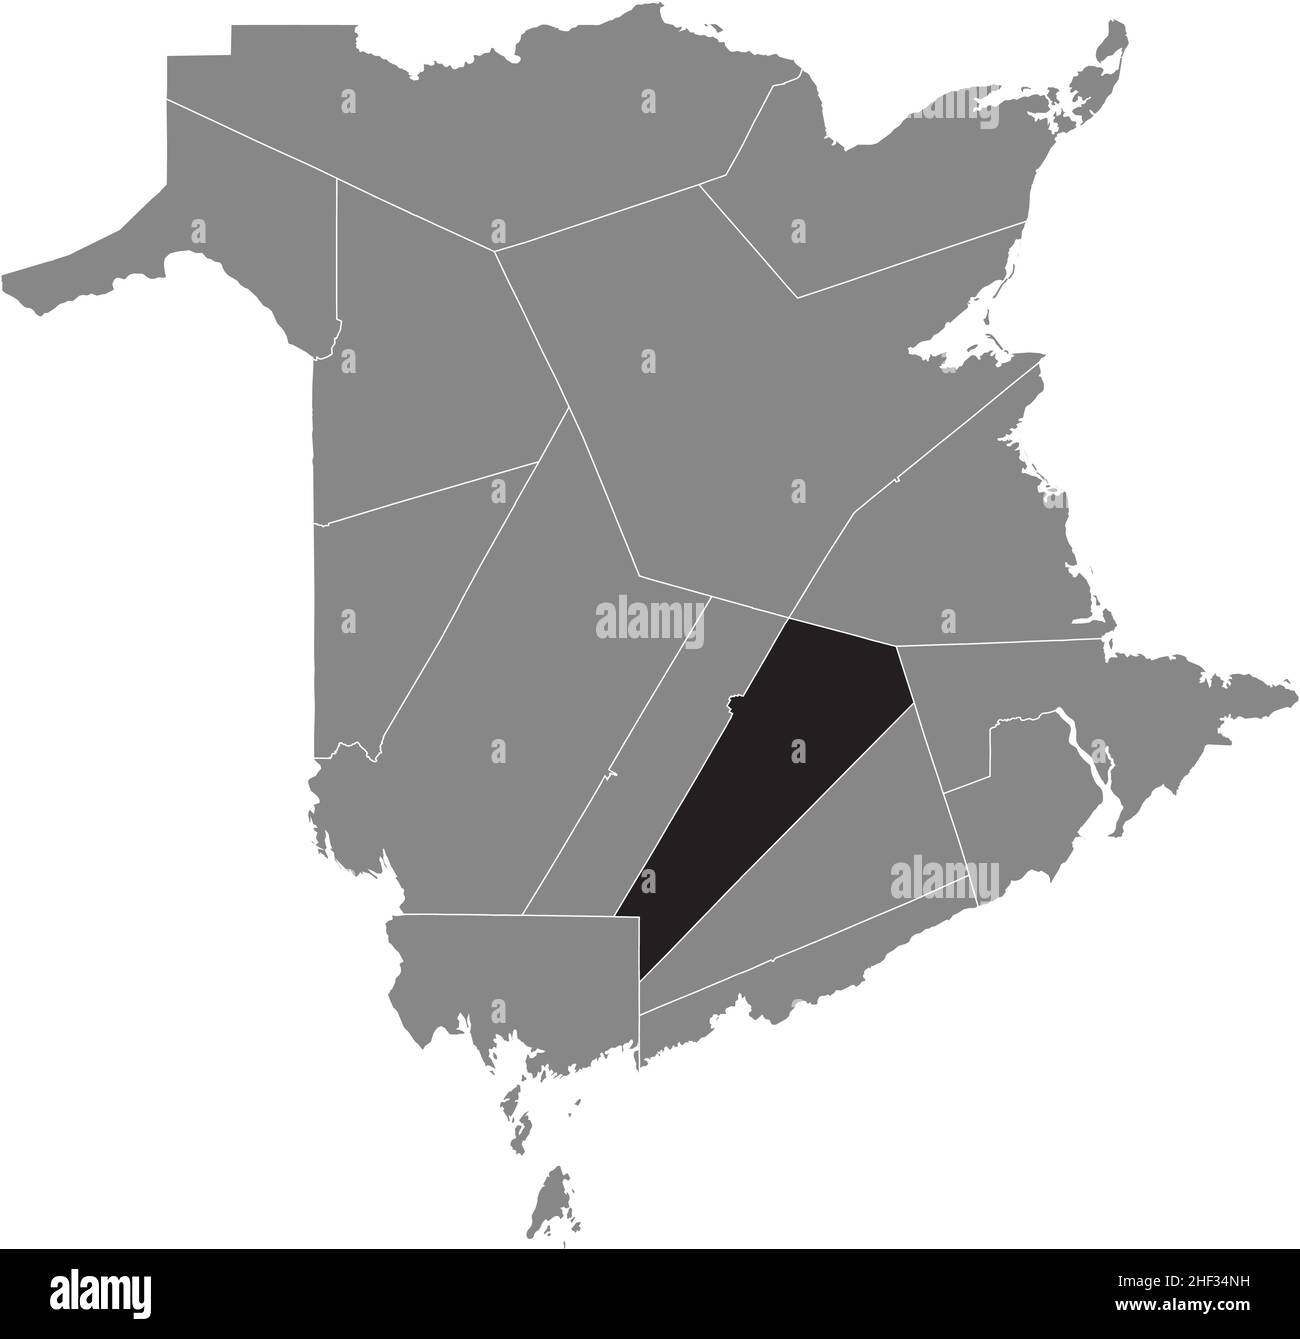 Schwarz flach leer markiert Lageplan des QUEENS COUNTY innerhalb graue administrative Karte der Grafschaften des kanadischen Territoriums von New Brunswick, Cana Stock Vektor